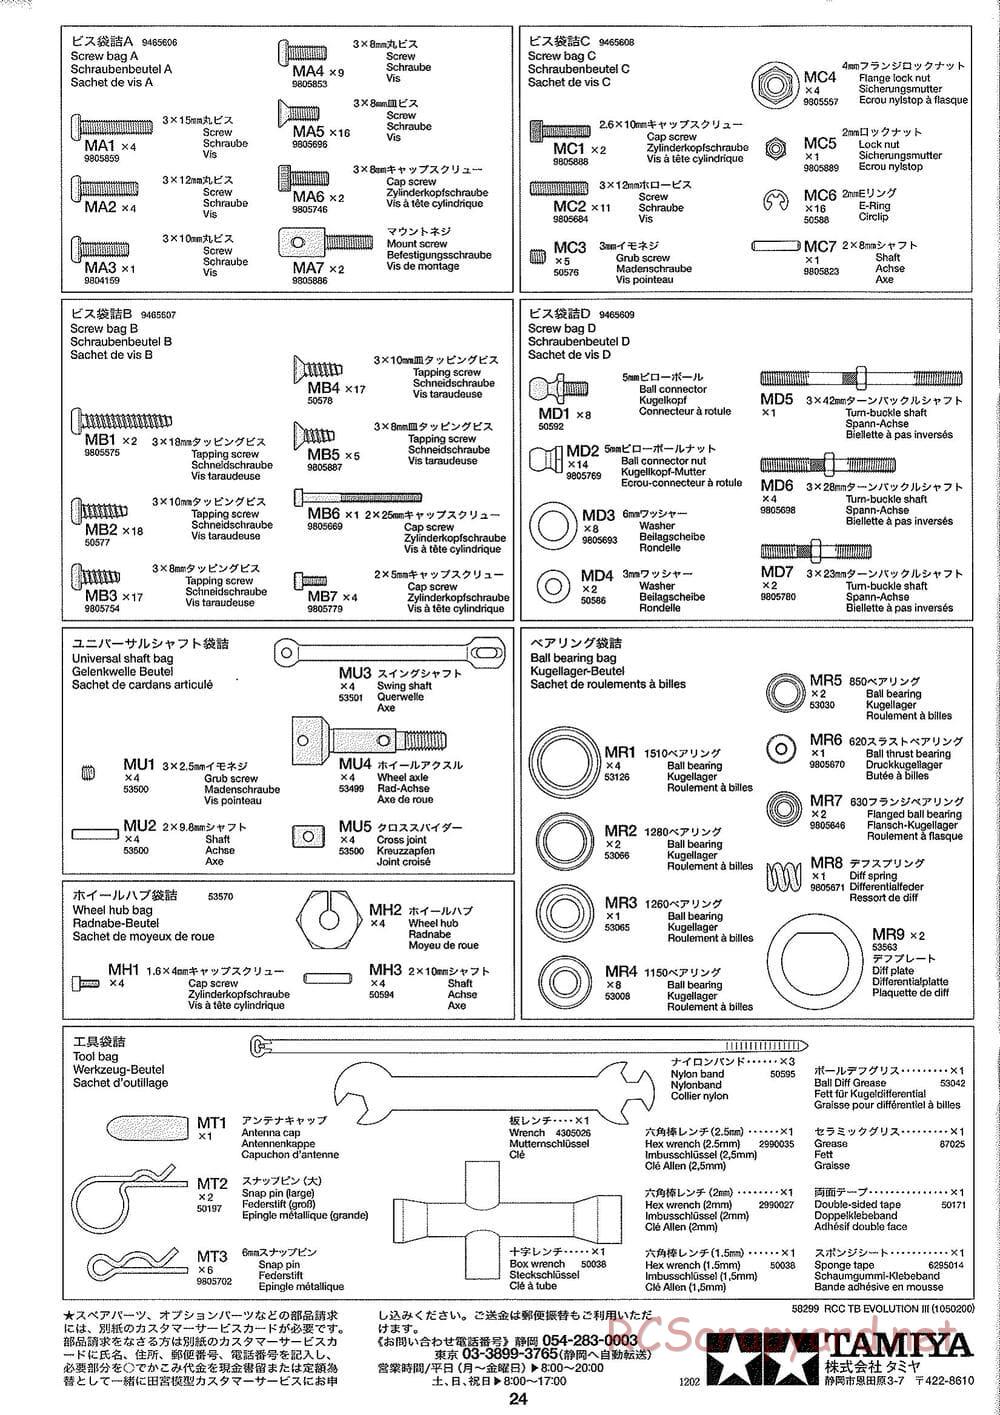 Tamiya - TB Evolution III Chassis - Manual - Page 25